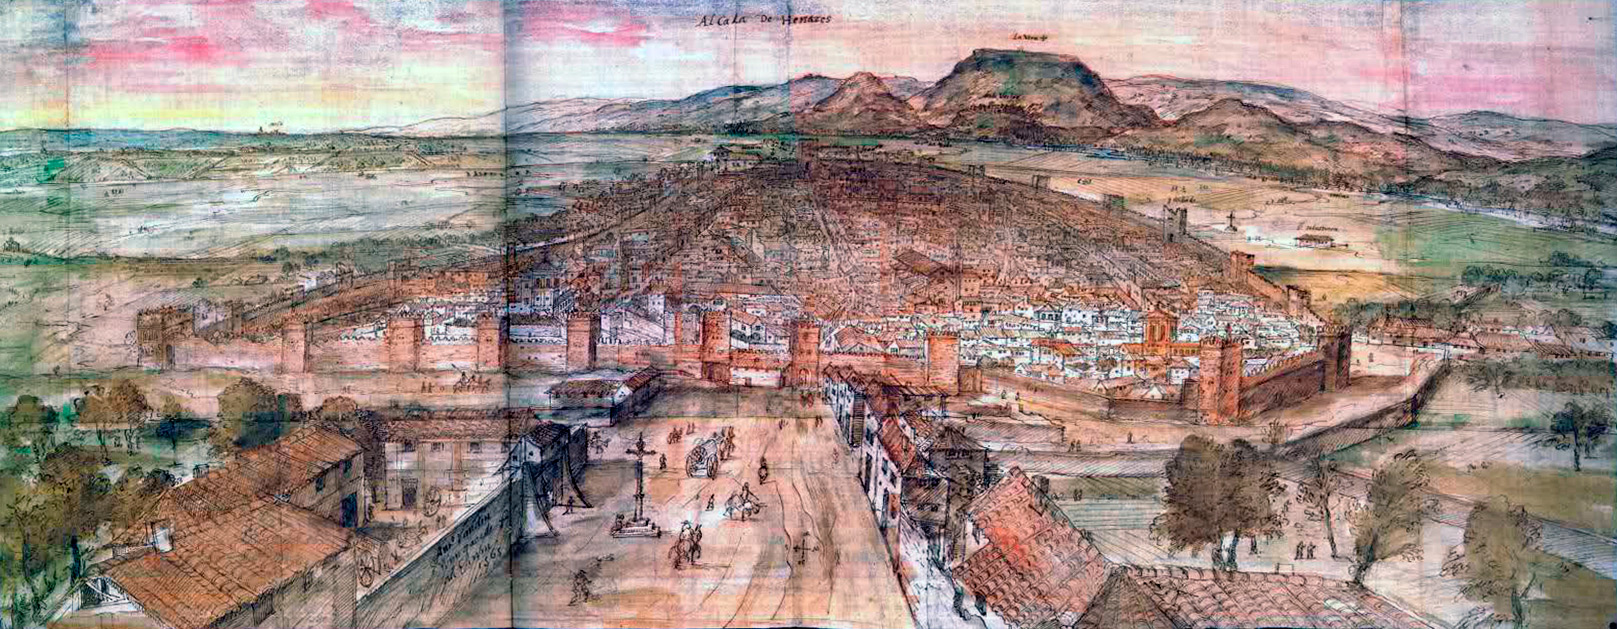 Alcalá por Anton Von Wyngaerde (1565)